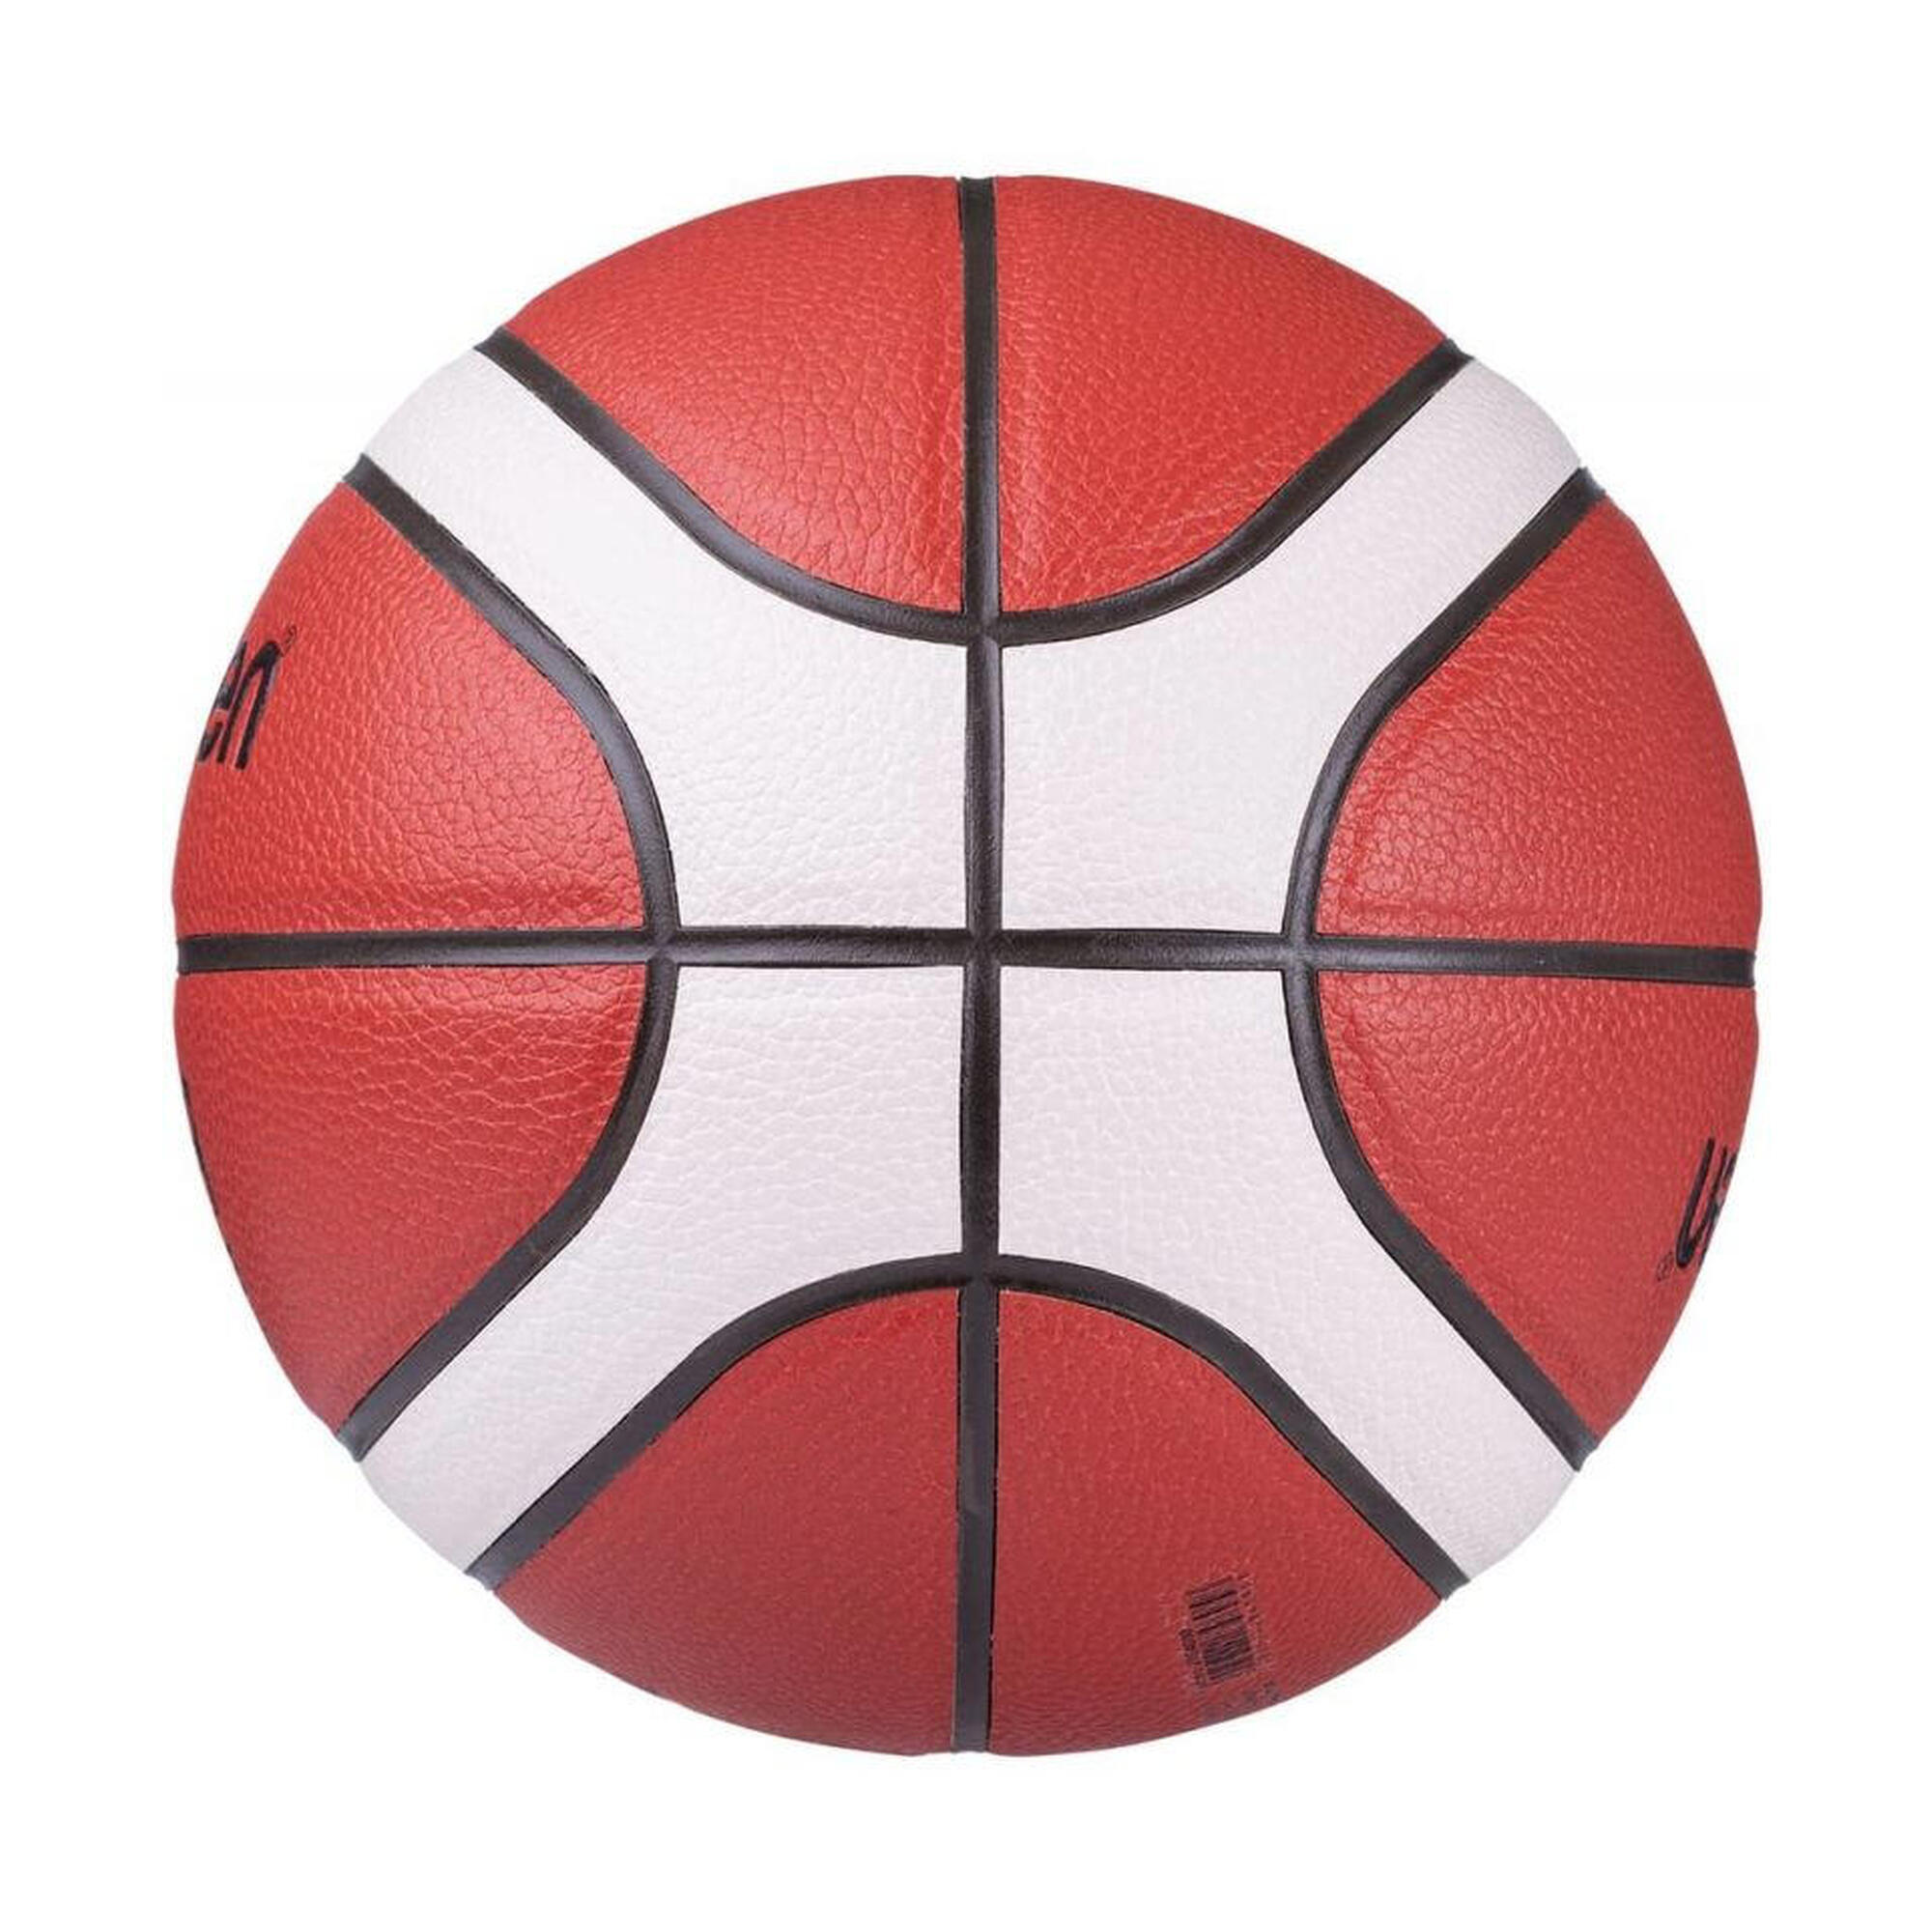 Balón baloncesto Molten BG4000